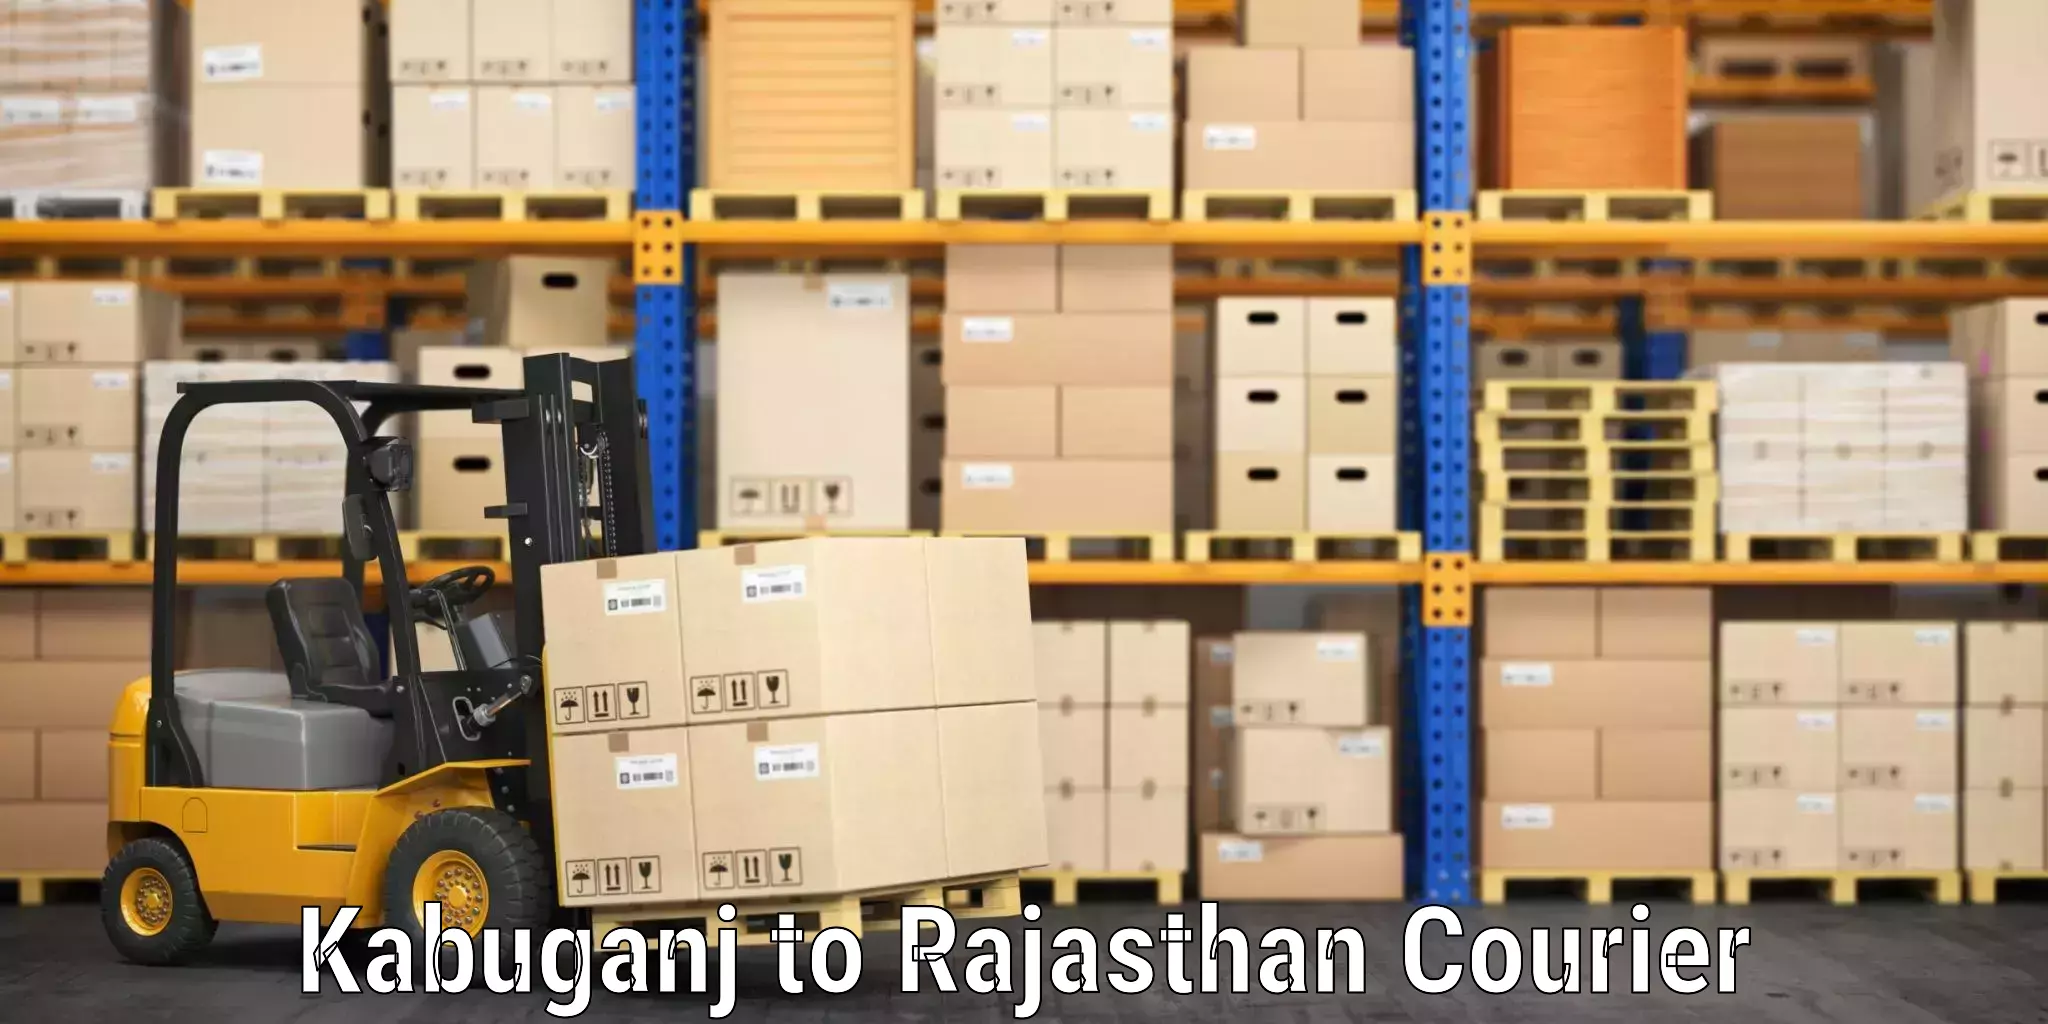 Efficient baggage transport Kabuganj to Rajasthan